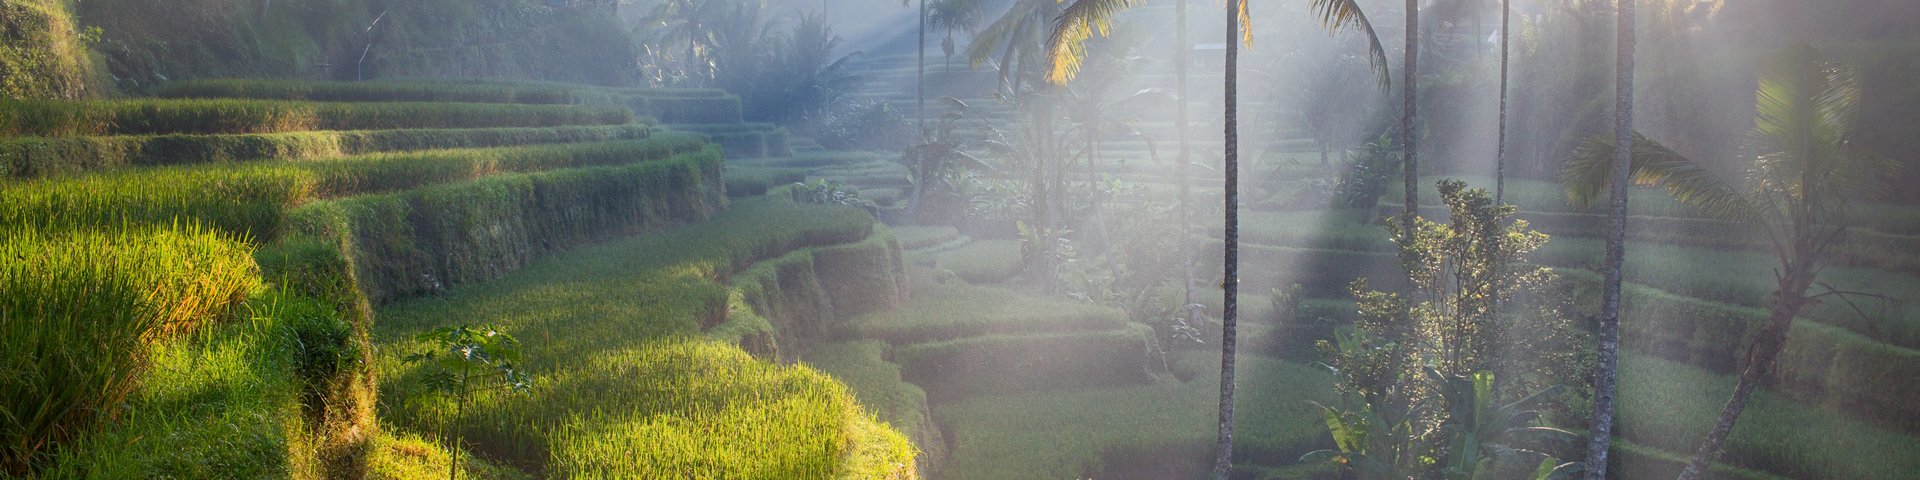 Reisfelder in Bali, Indonesien